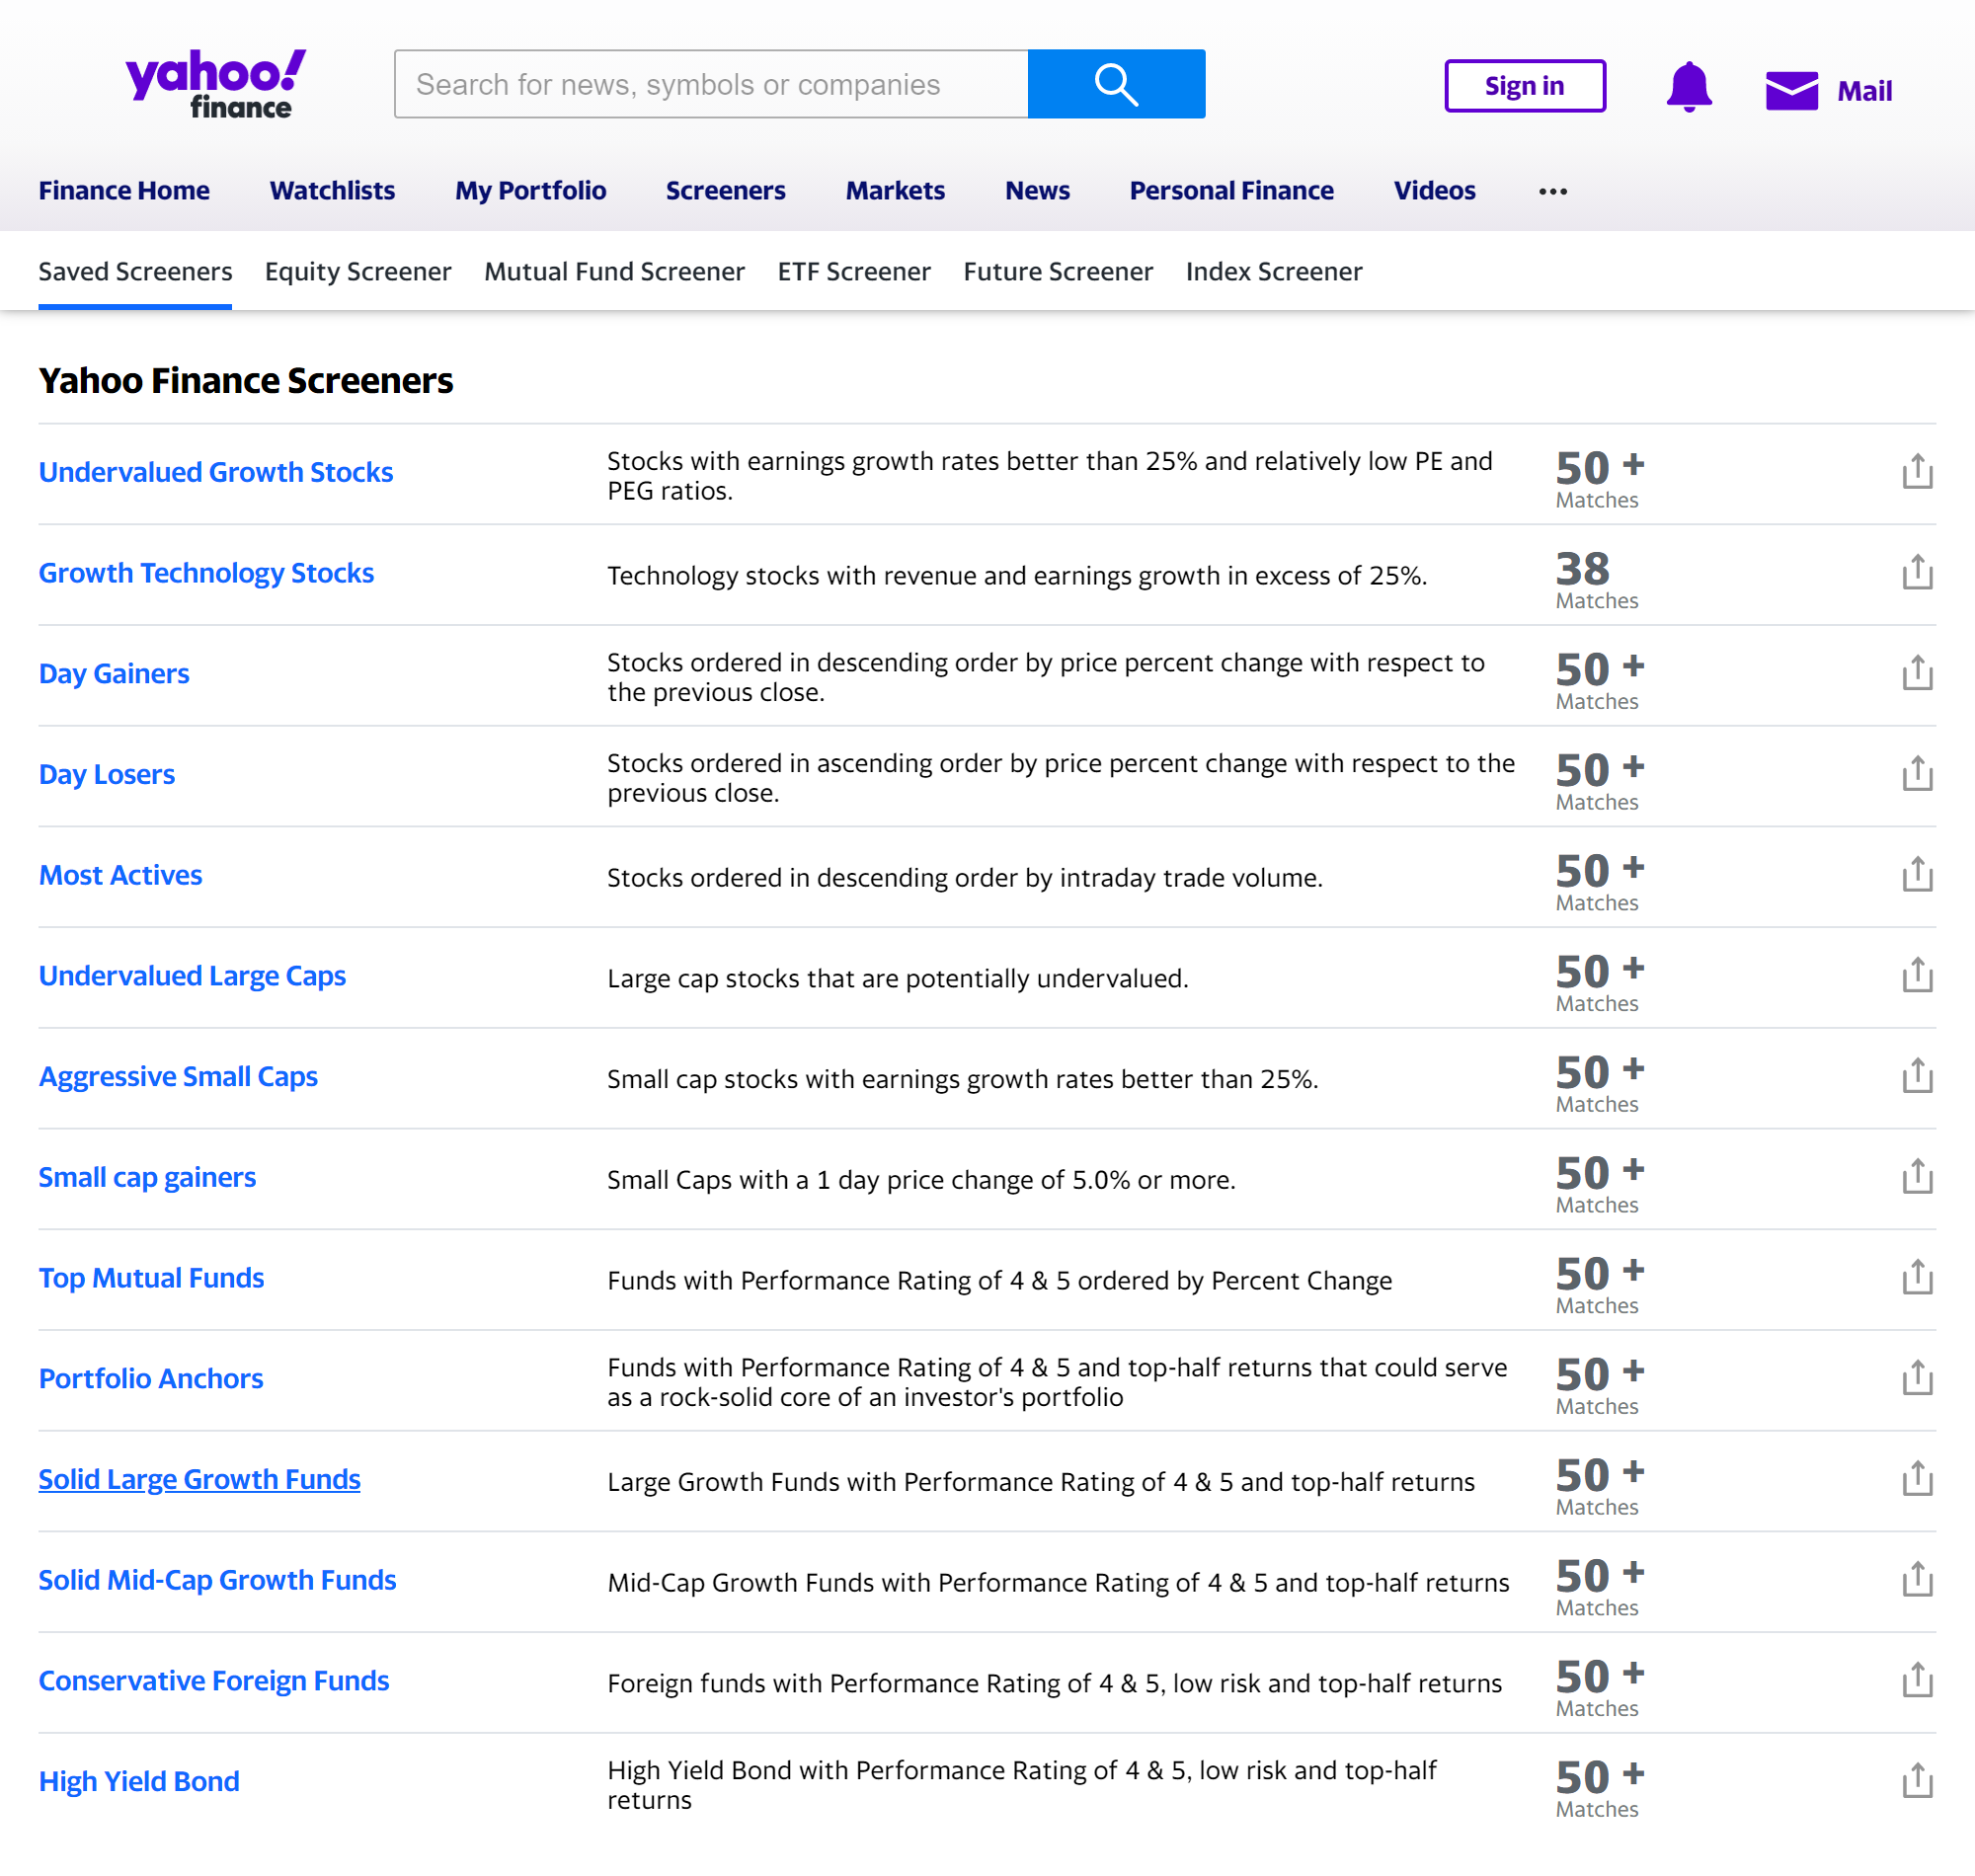 Набор готовых скринеров Yahoo. Например, Growth Technology Stocks — это список технологических компаний, у которых выручка и прибыль растут более чем на 25% в год. Если базовые варианты не устраивают, настройте скринер под себя